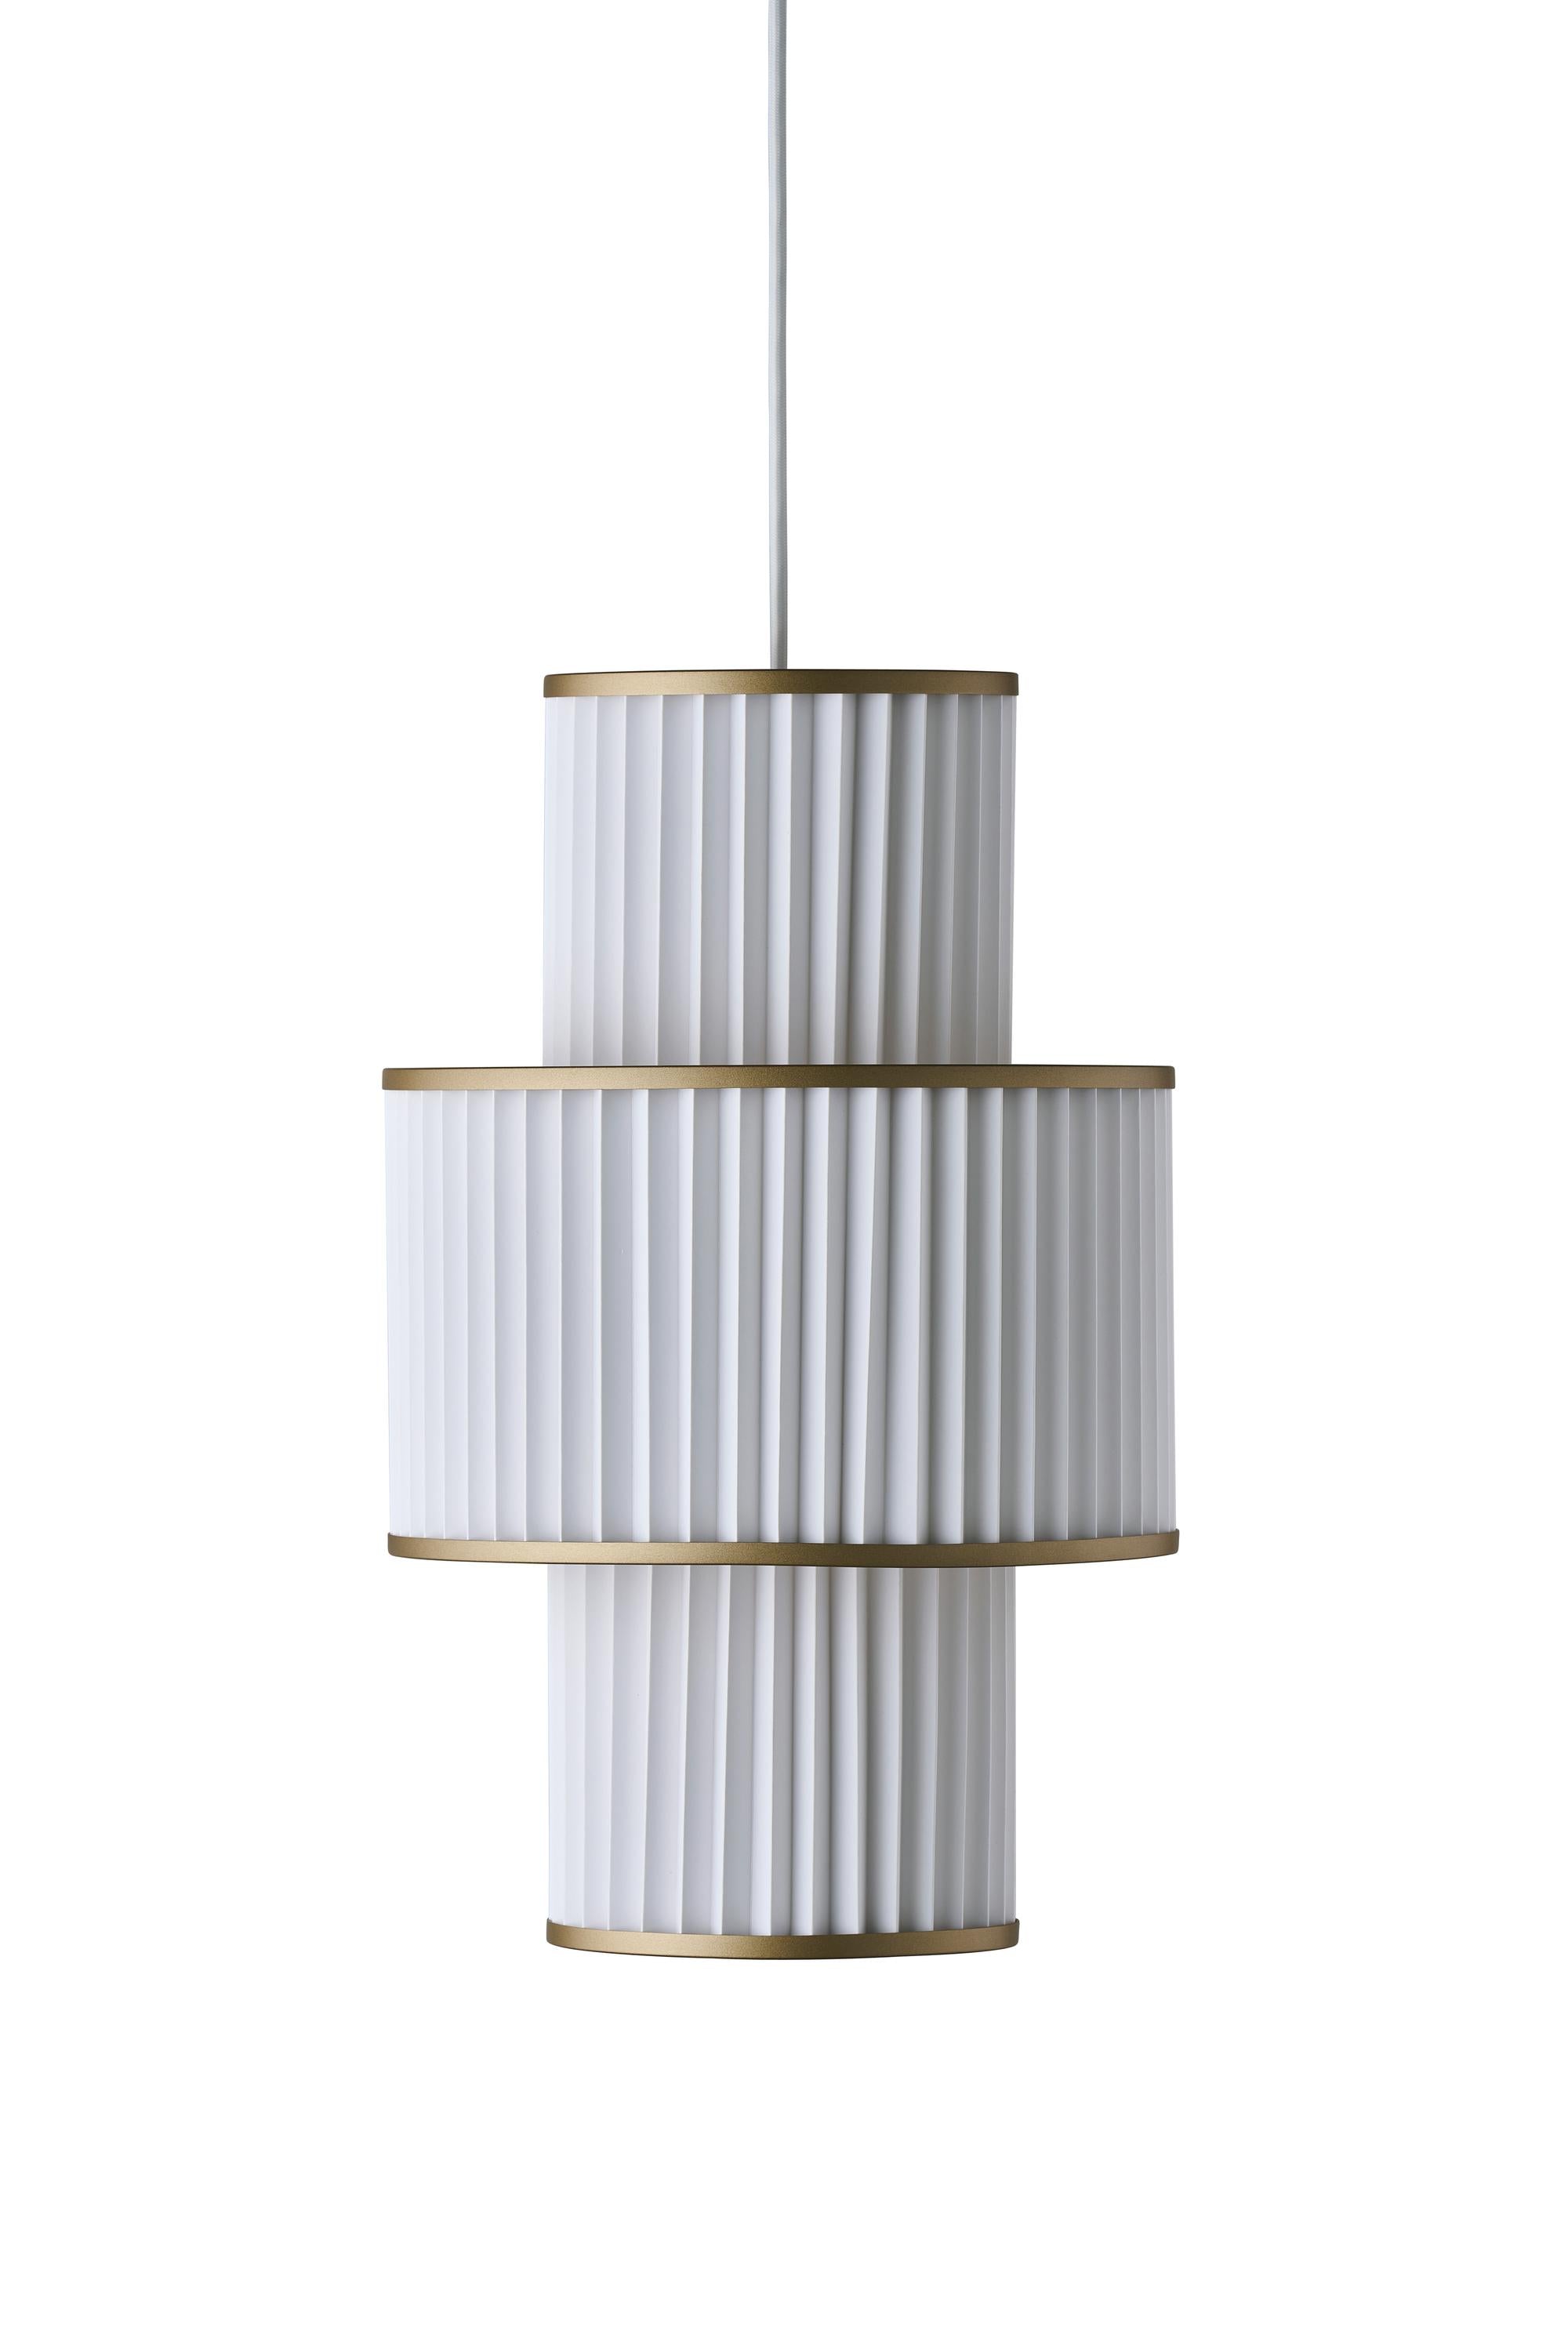 Le Klint PLIVELLO Lampe à suspension dorée / blanc avec 3 nuances (S M S)